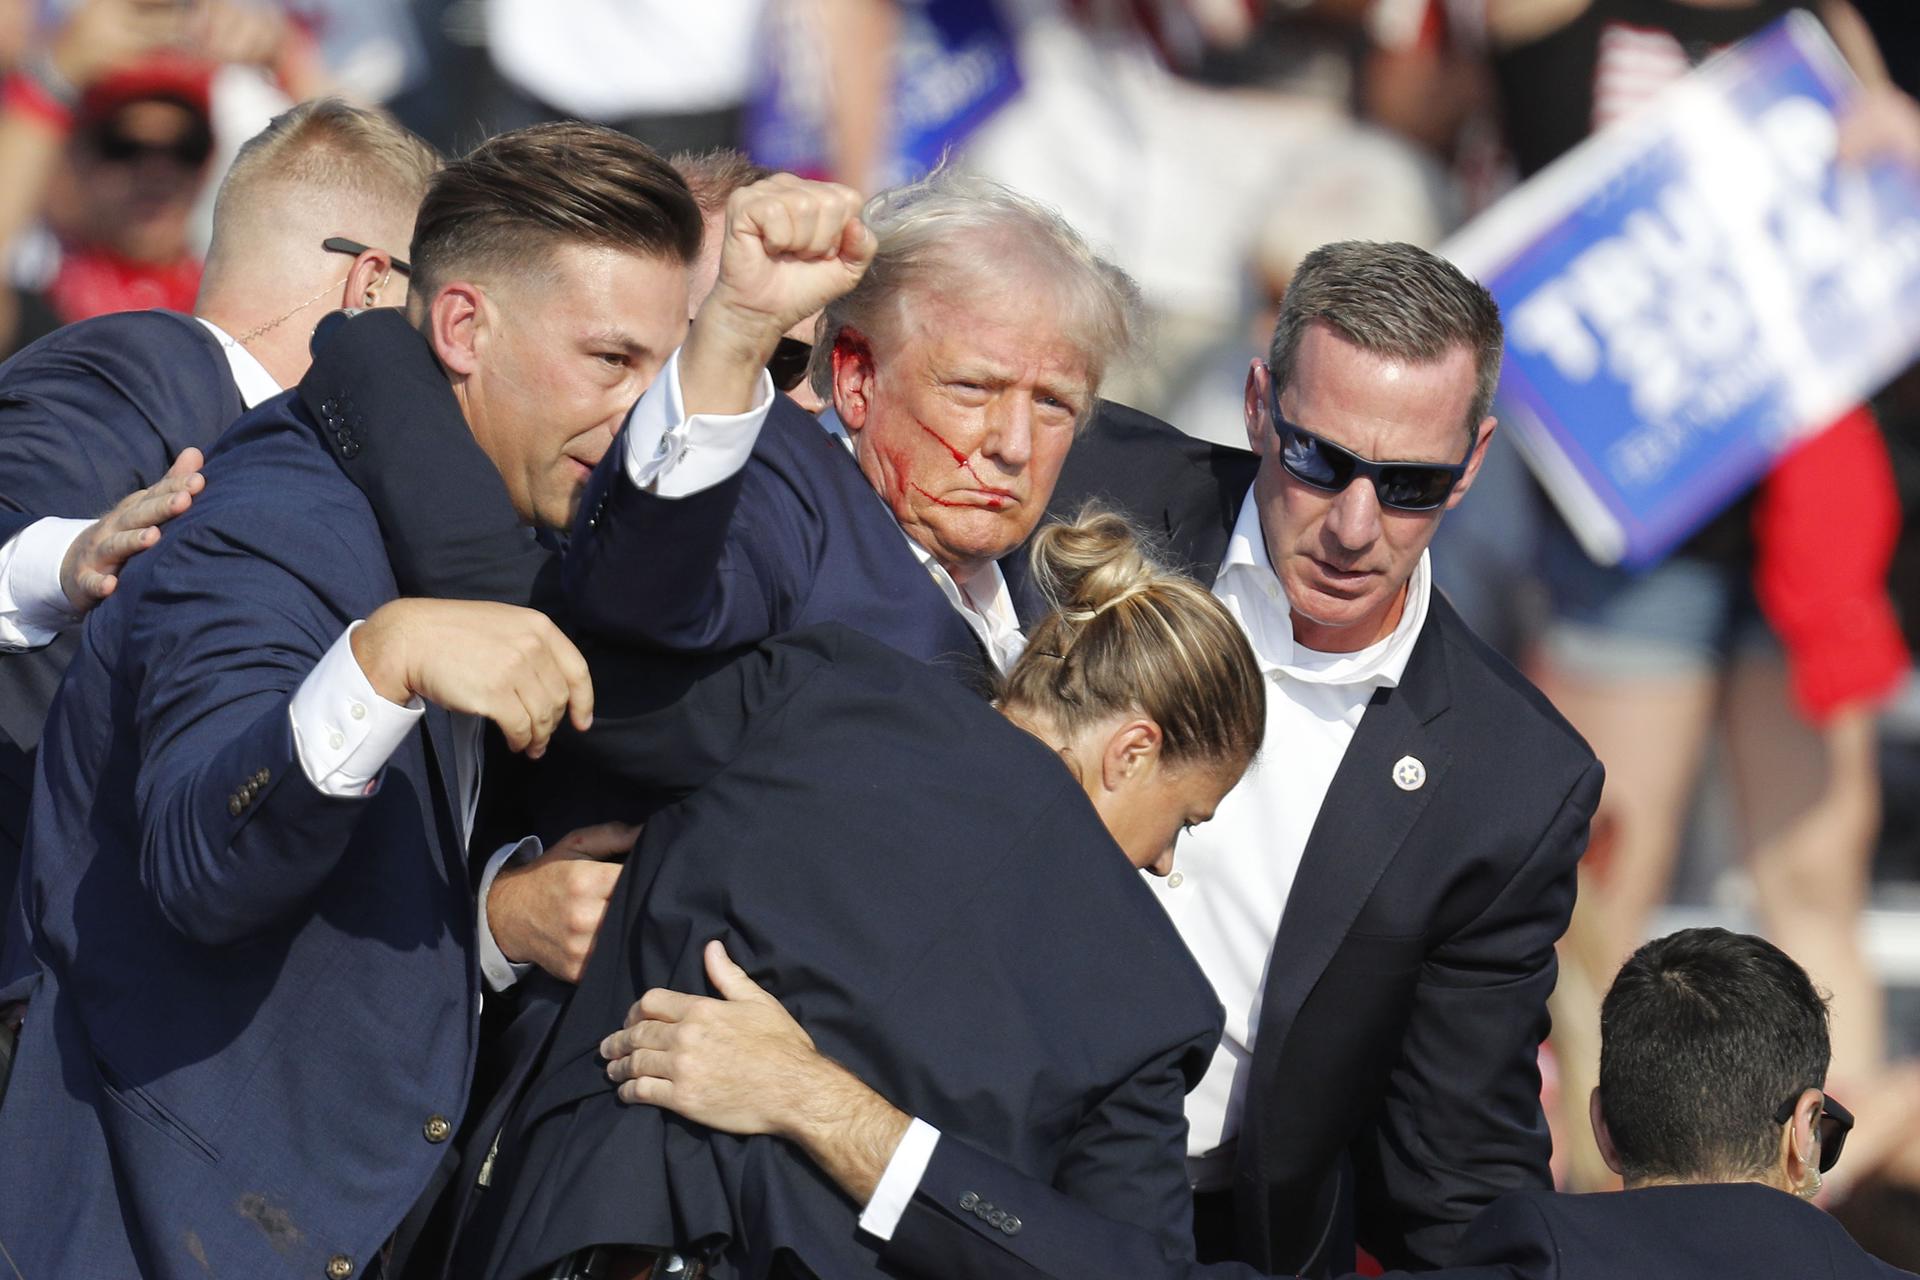 El expresidente estadounidense Donald Trump es sacado del escenario por el Servicio Secreto tras un atentado en Butler, Pensilvania (Estados Unidos). EFE/David Maxwell